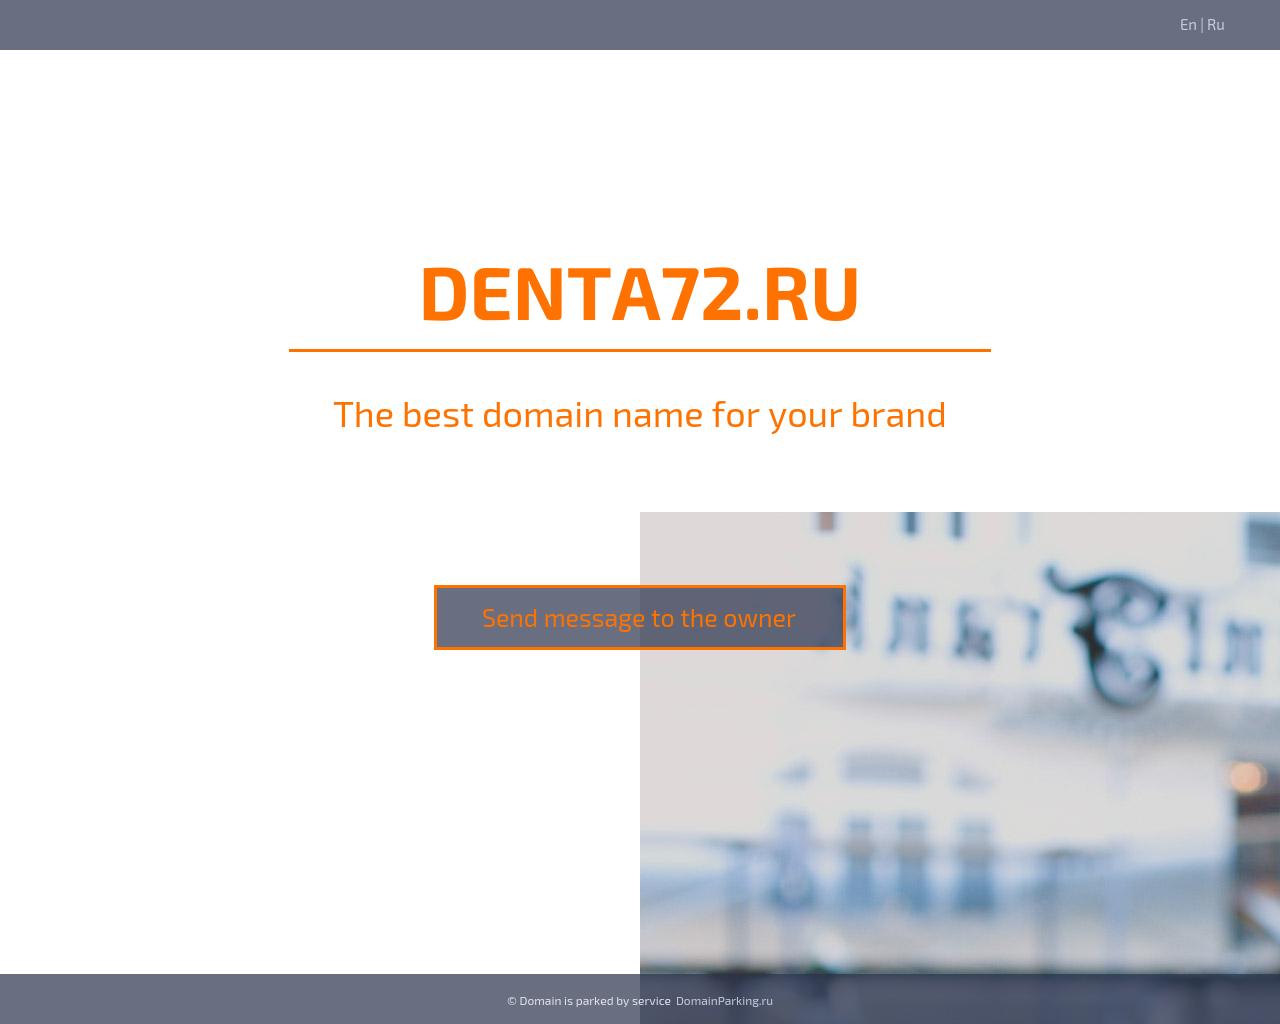 Изображение сайта denta72.ru в разрешении 1280x1024